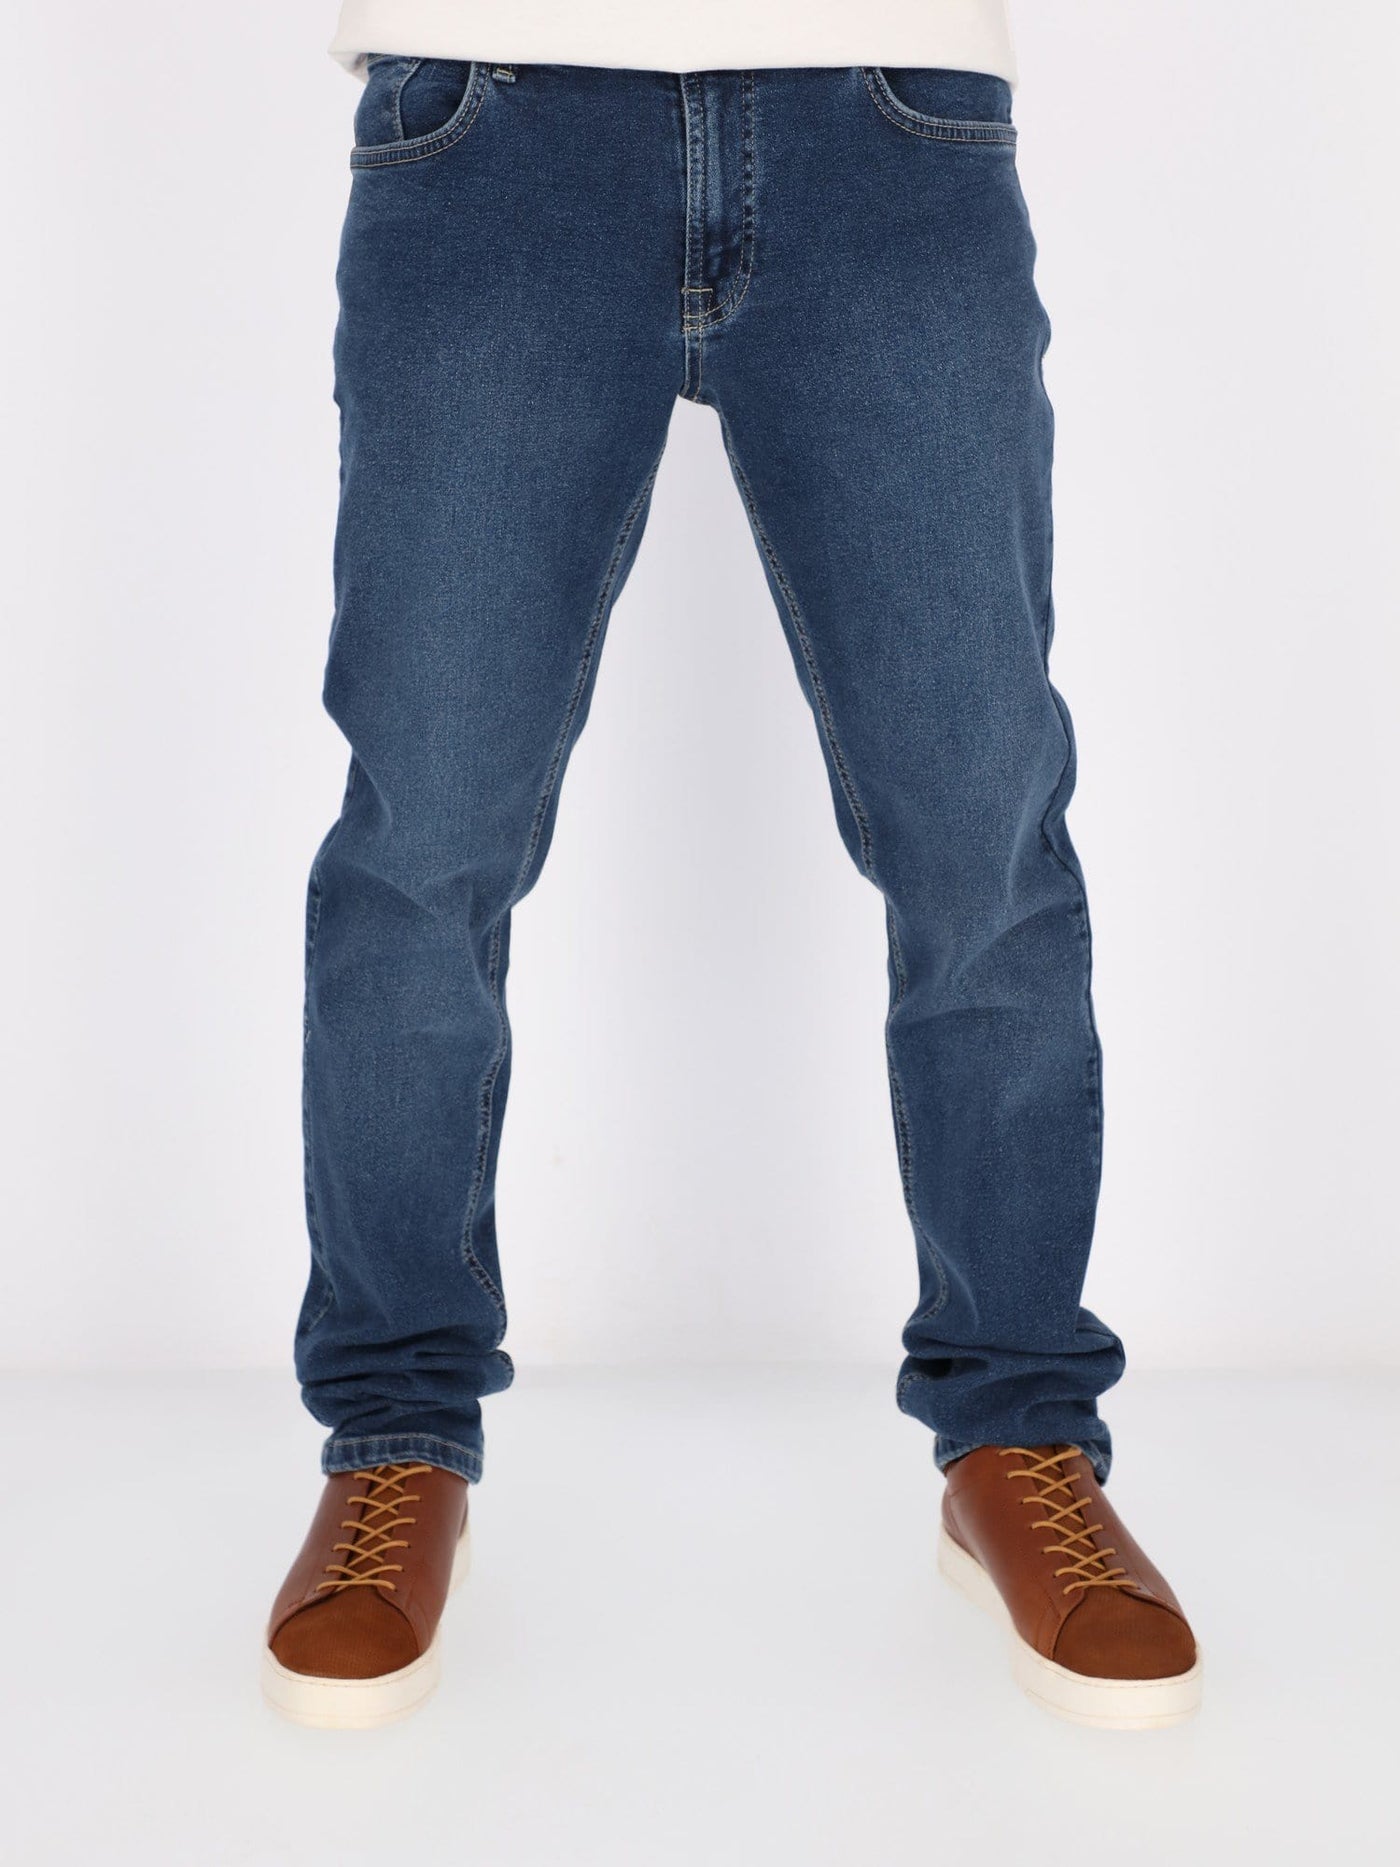 Daniel Hechter Pants & Shorts Light Blue / 30 Standard Fit Mid-Rise Jeans Pants